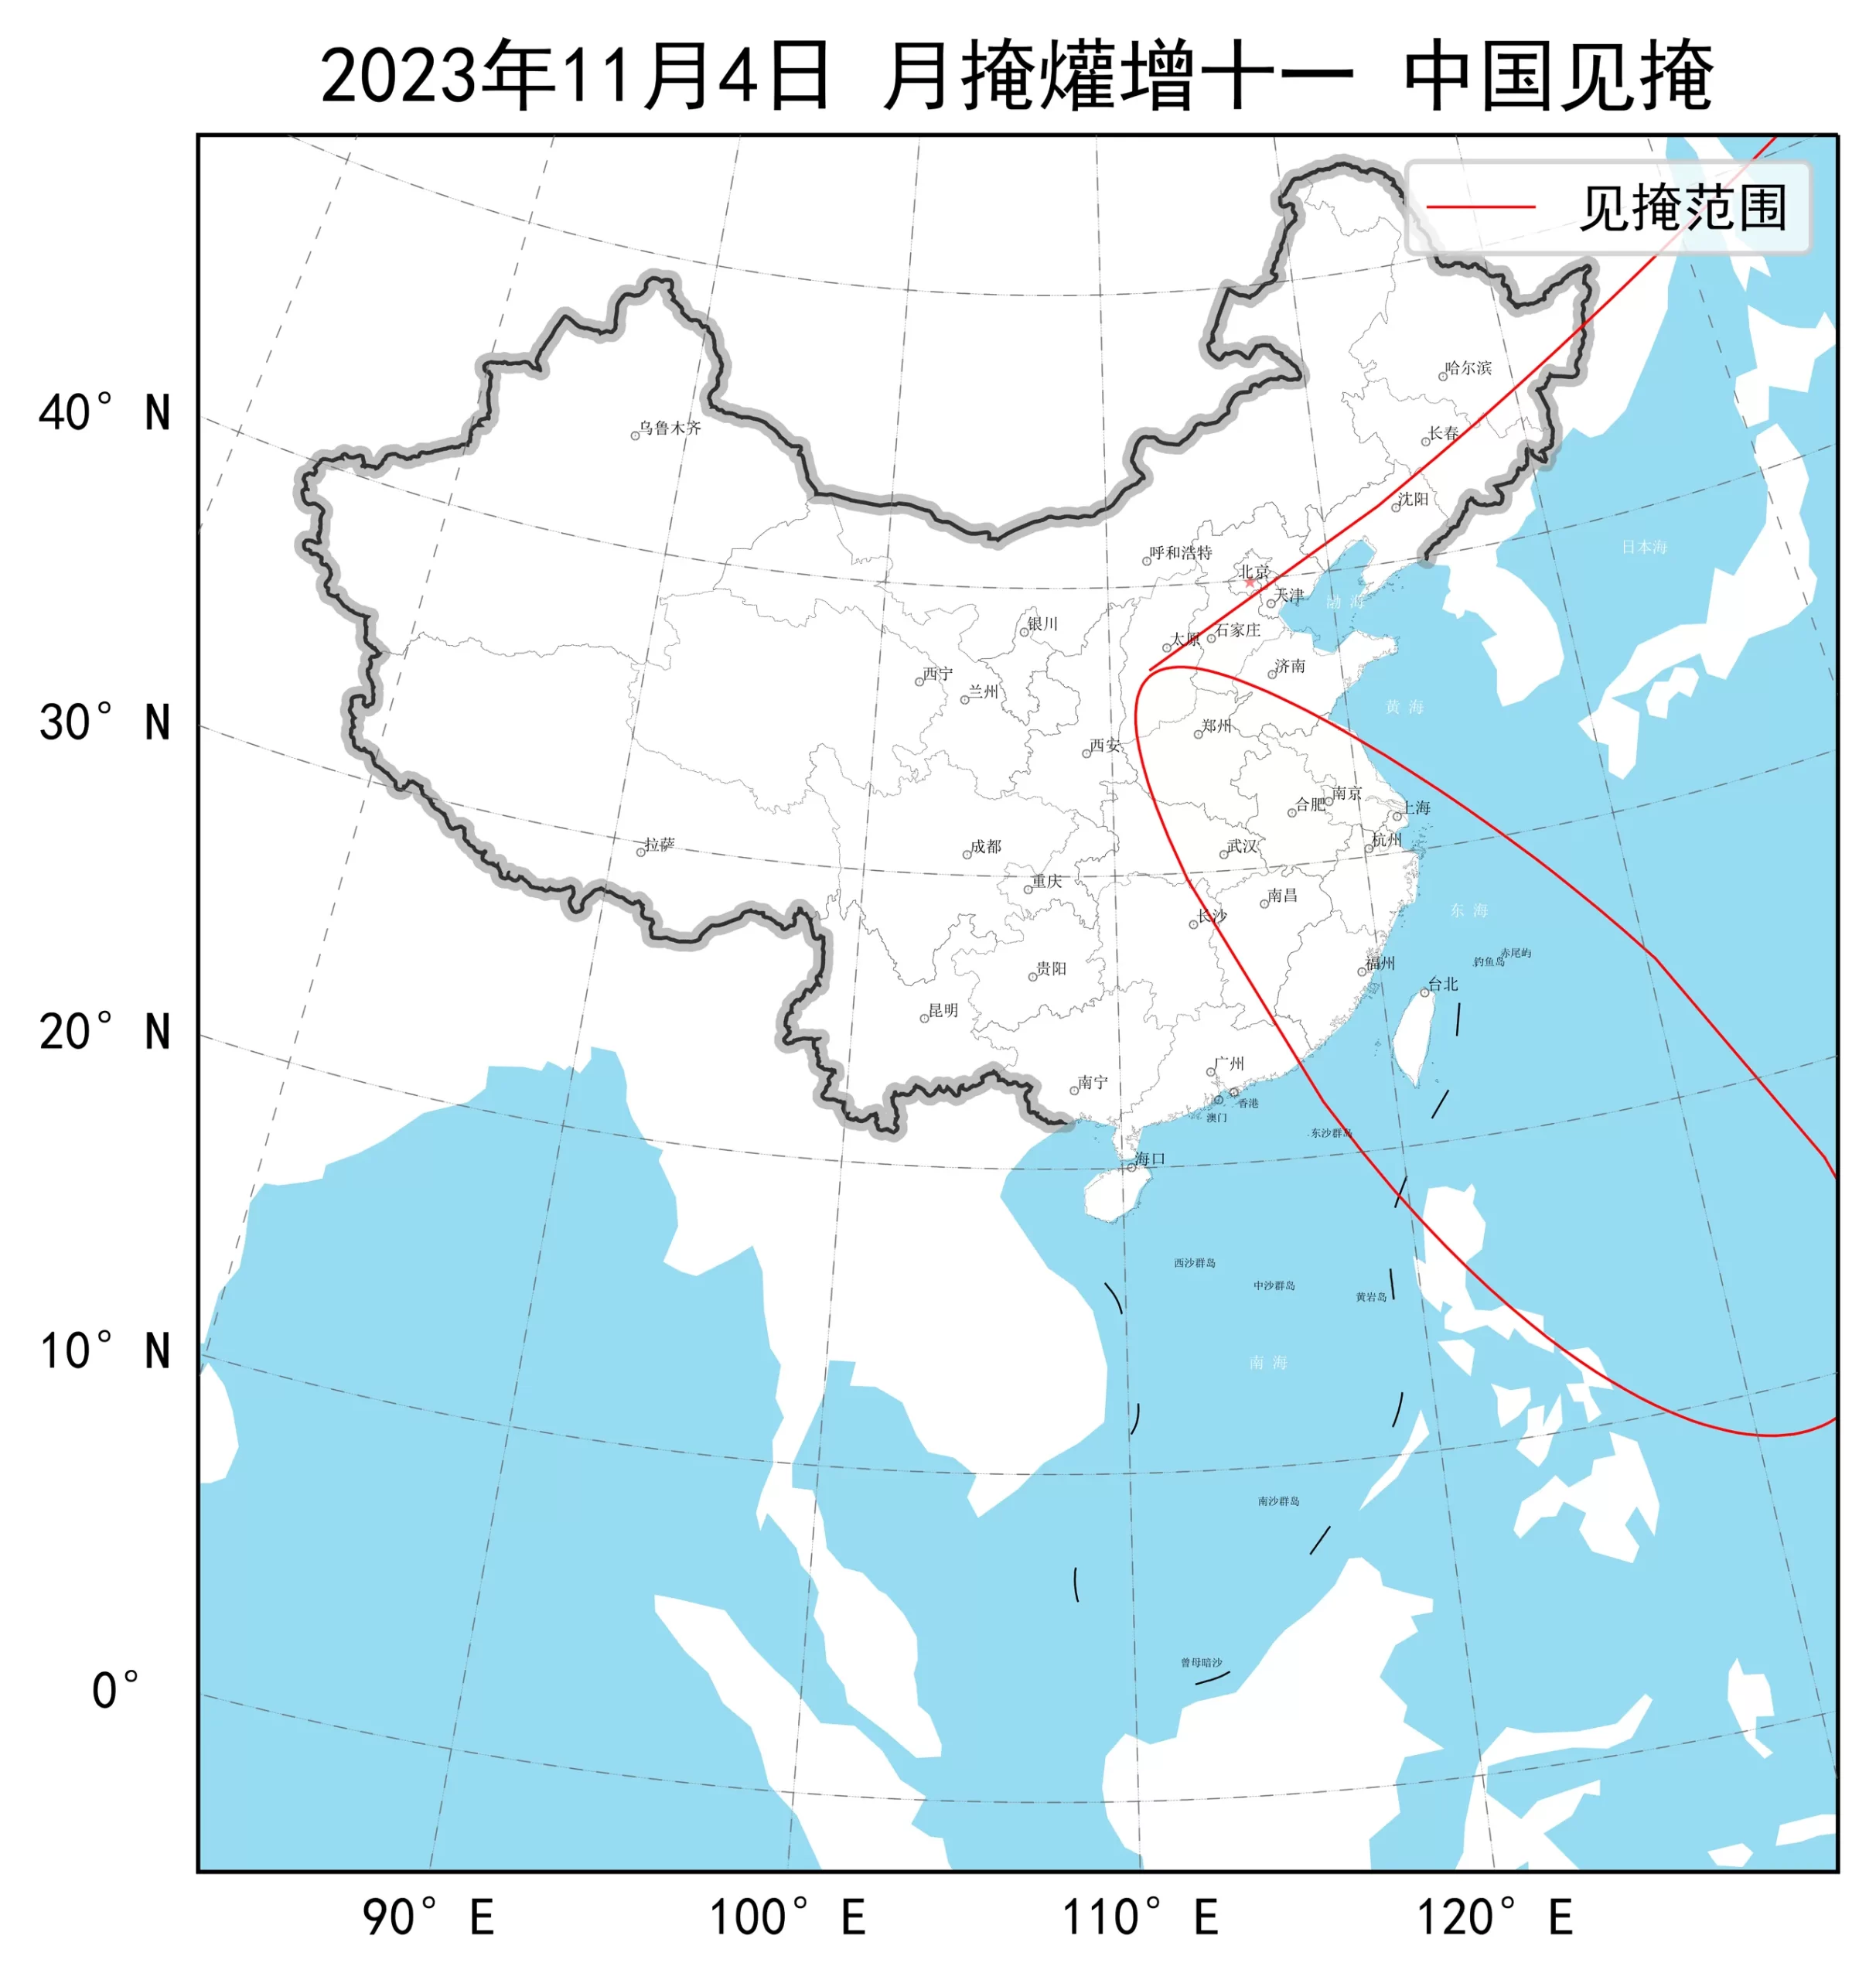 2023年11月4日月掩爟增十一中国见掩